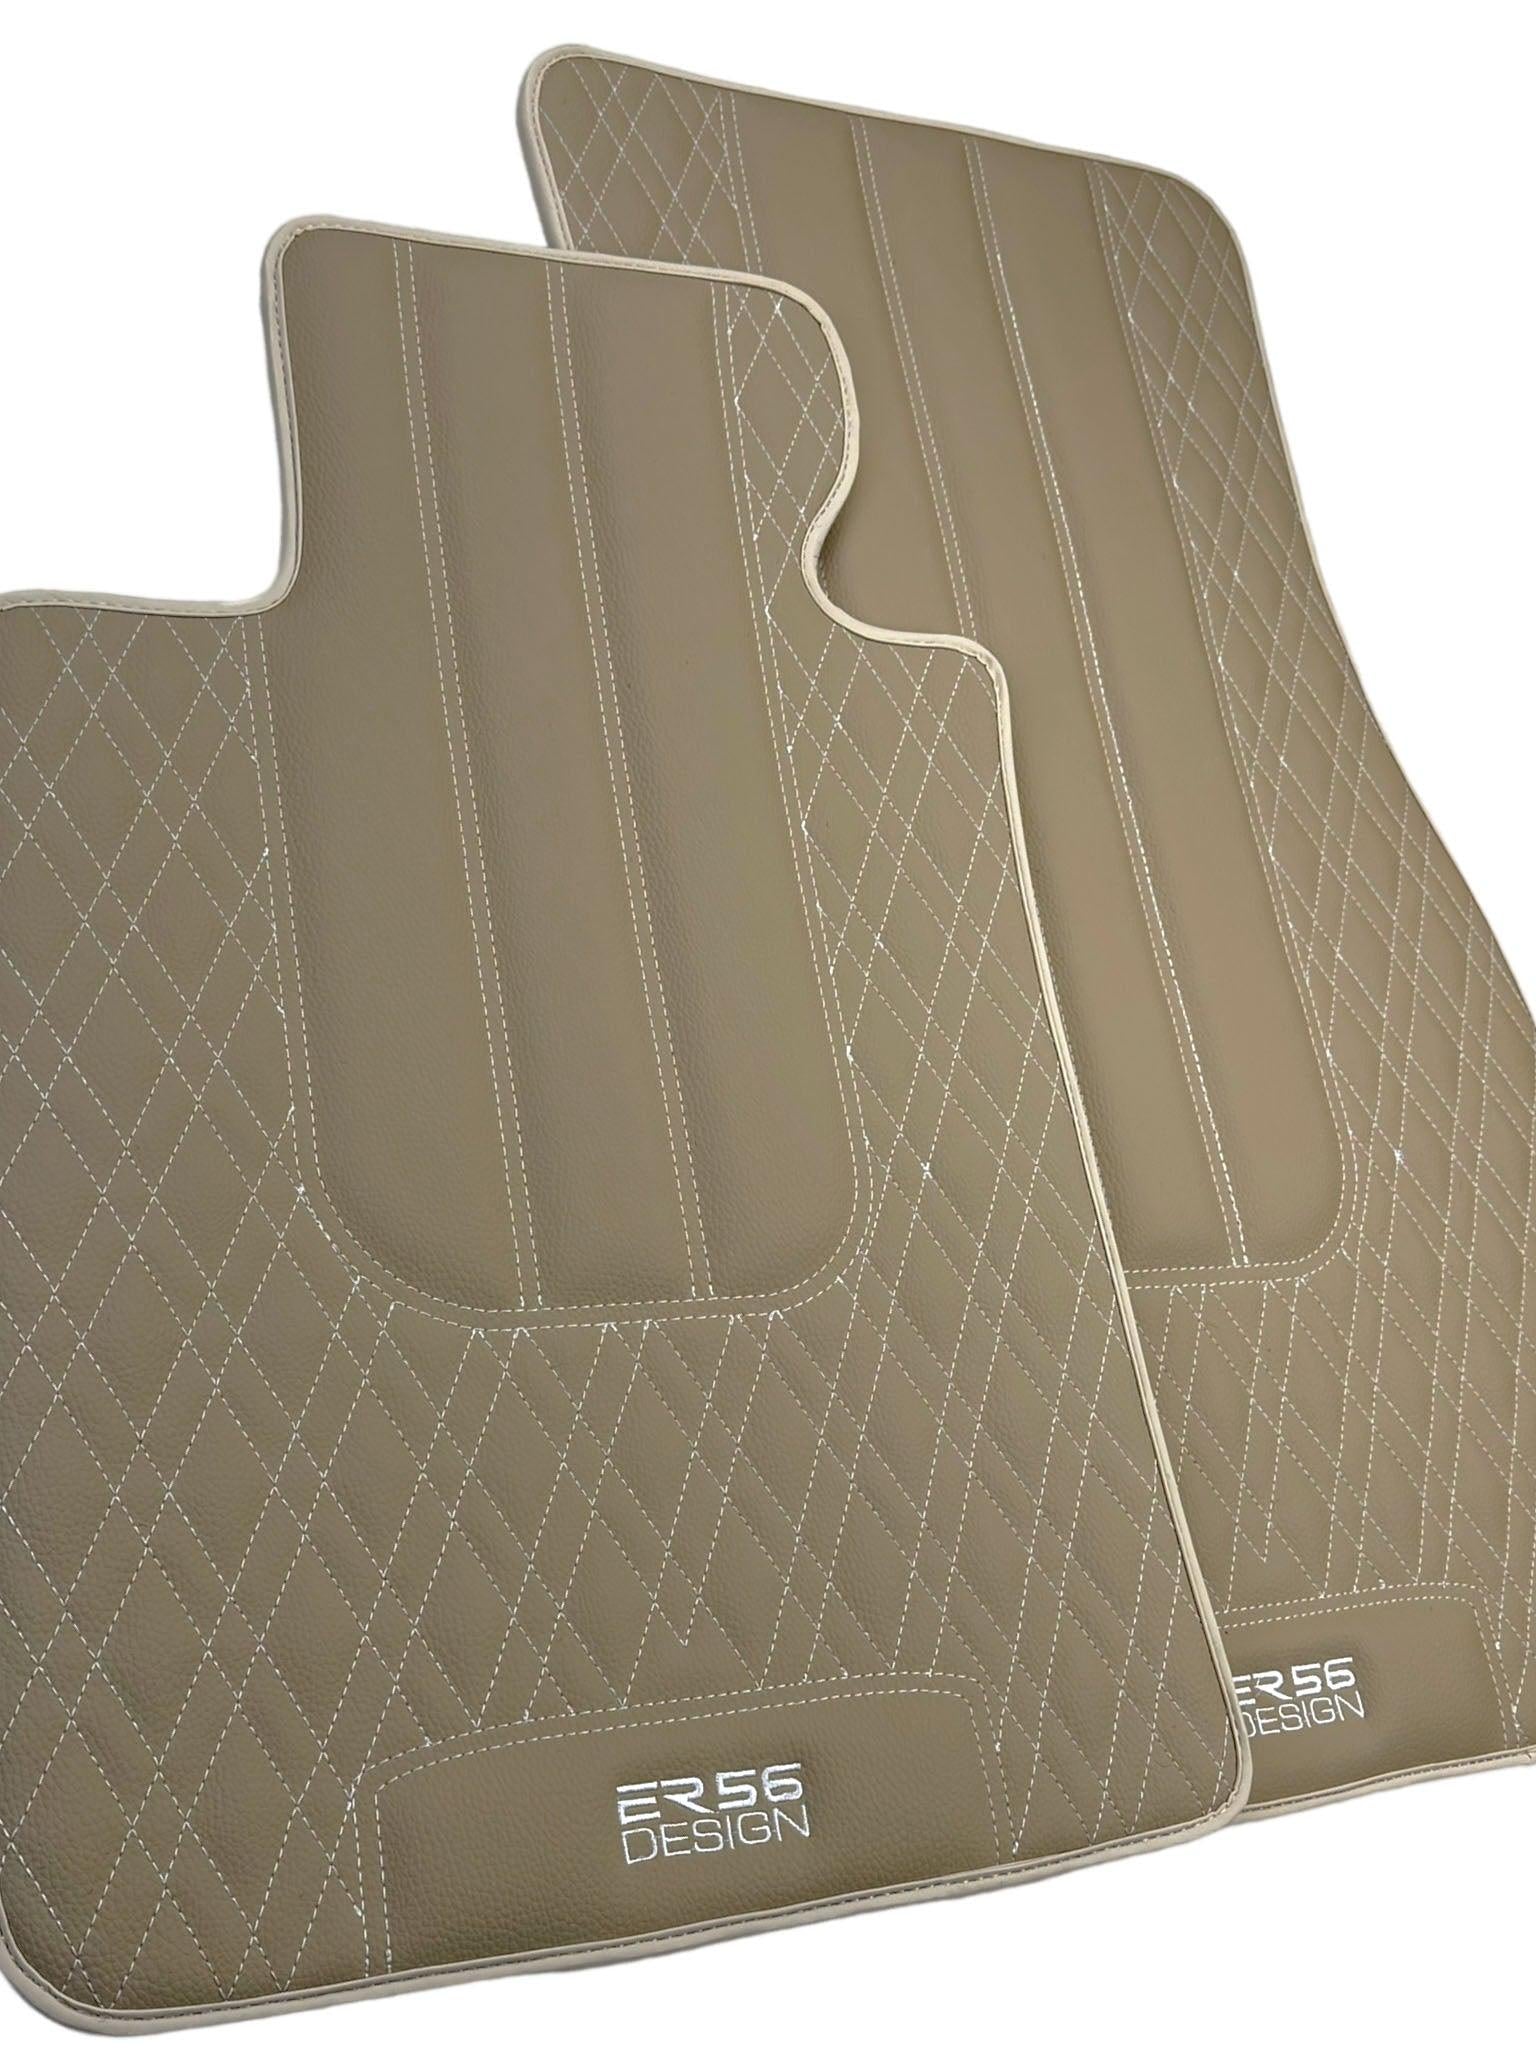 Beige Leather Floor Floor Mats For BMW 5 Series E60